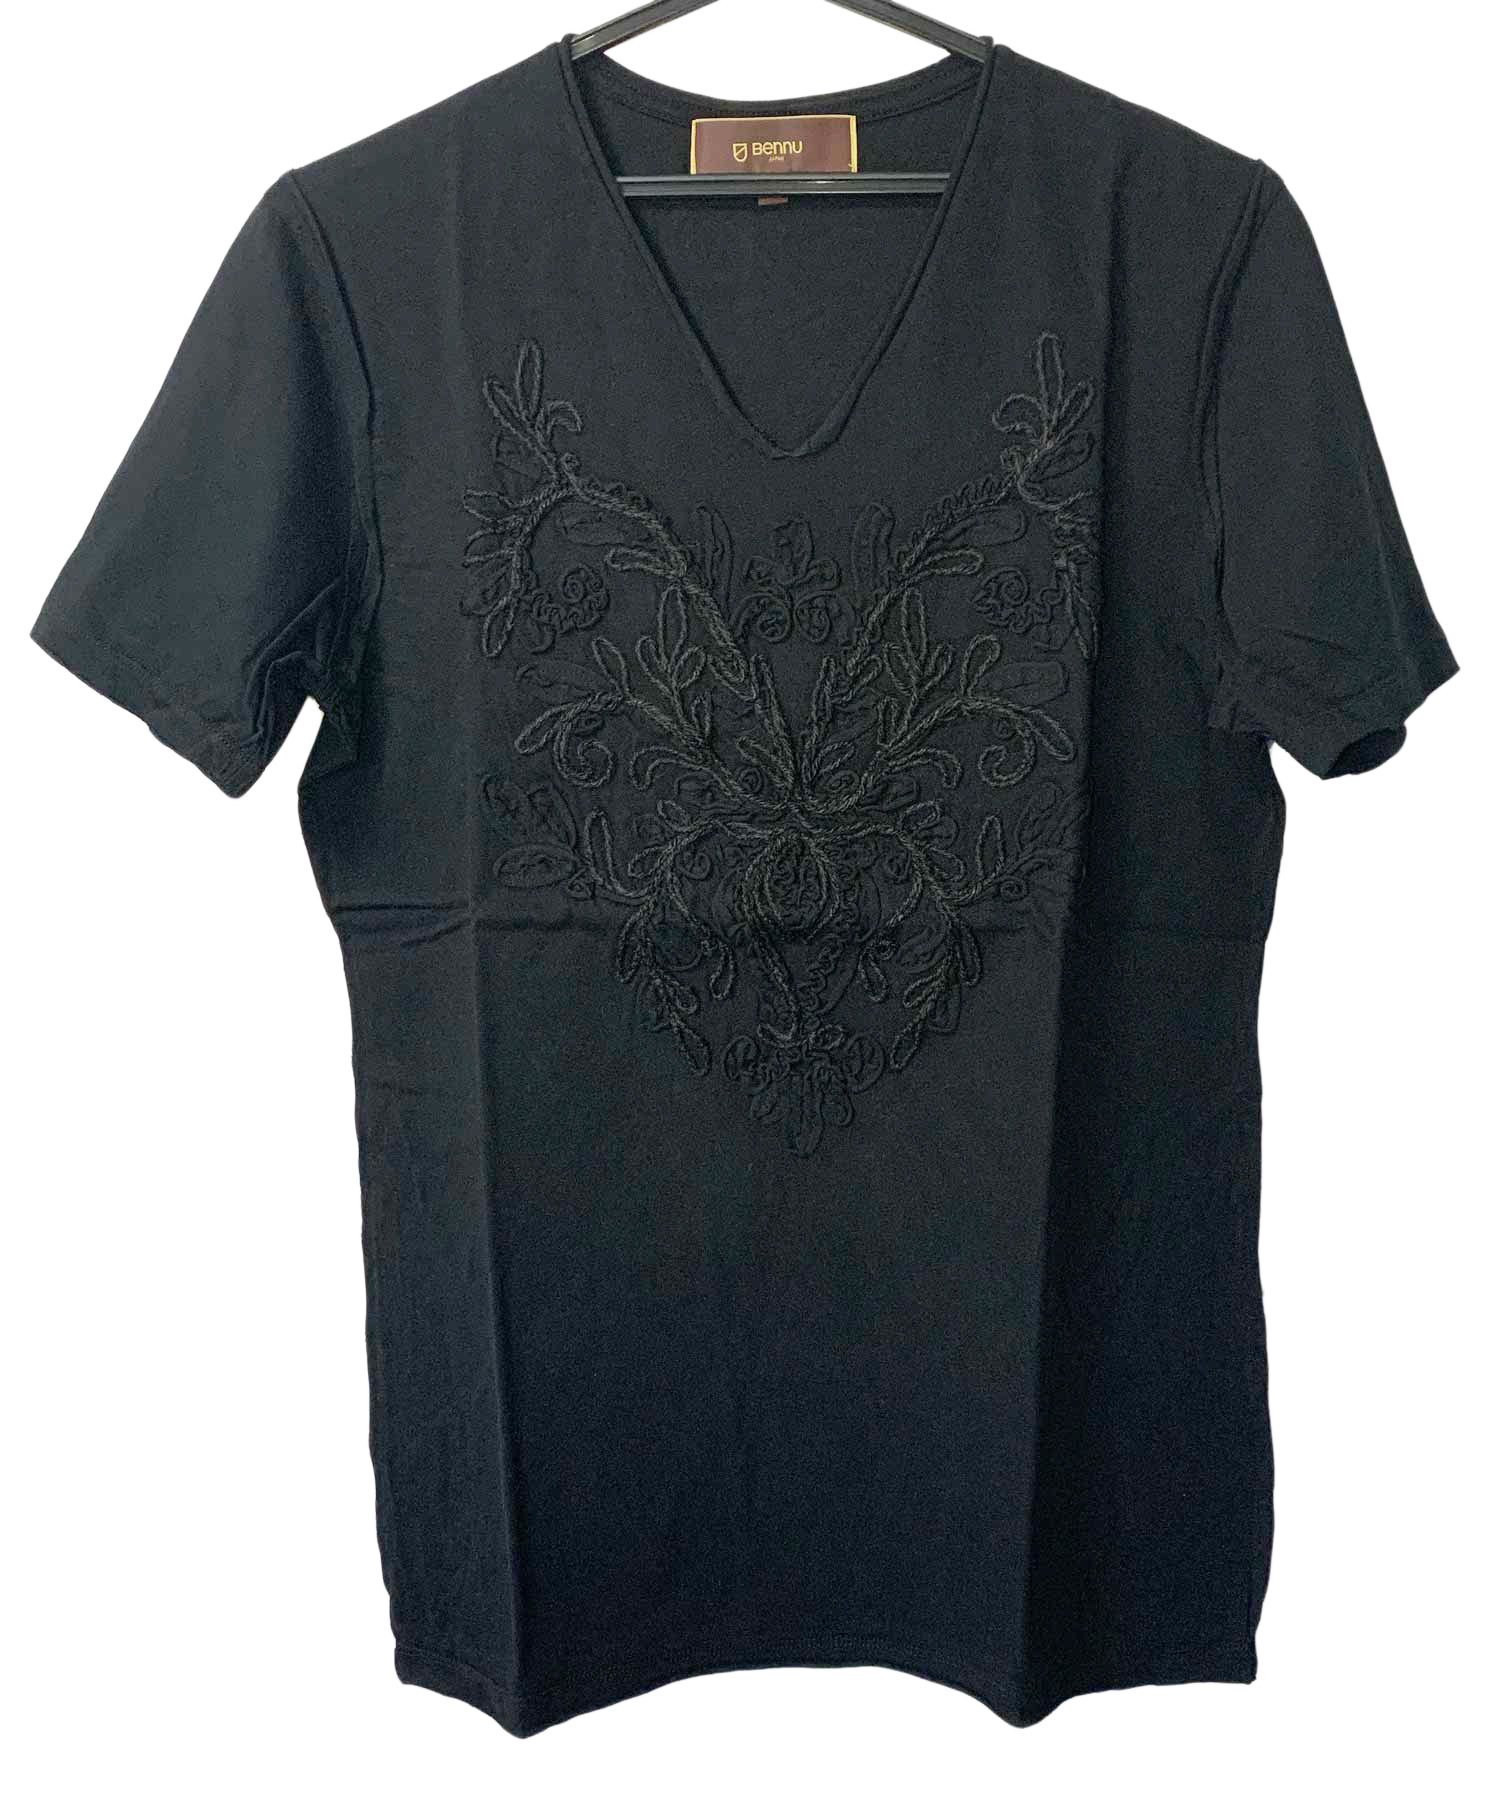 Bennu（ベンヌ）刺繍カットオフVネックTシャツ / ブラック